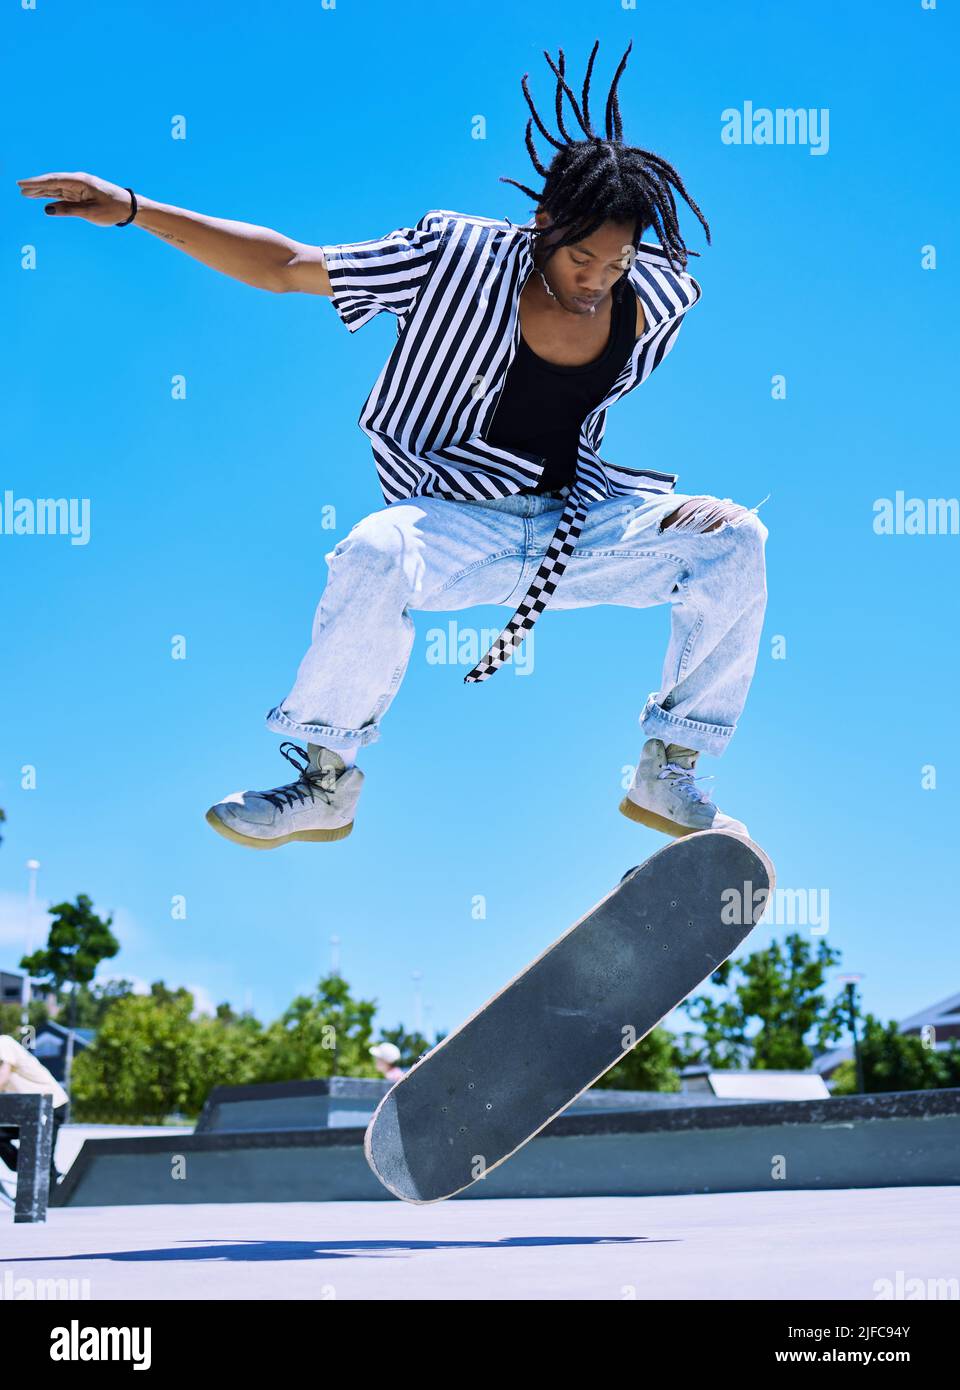 Jeune garçon afro-américain cool et élégant effectuant des tours de skate sur son plateau au skate Park. Jeune homme concentré exécutant des mensonges sur son skateboard Banque D'Images